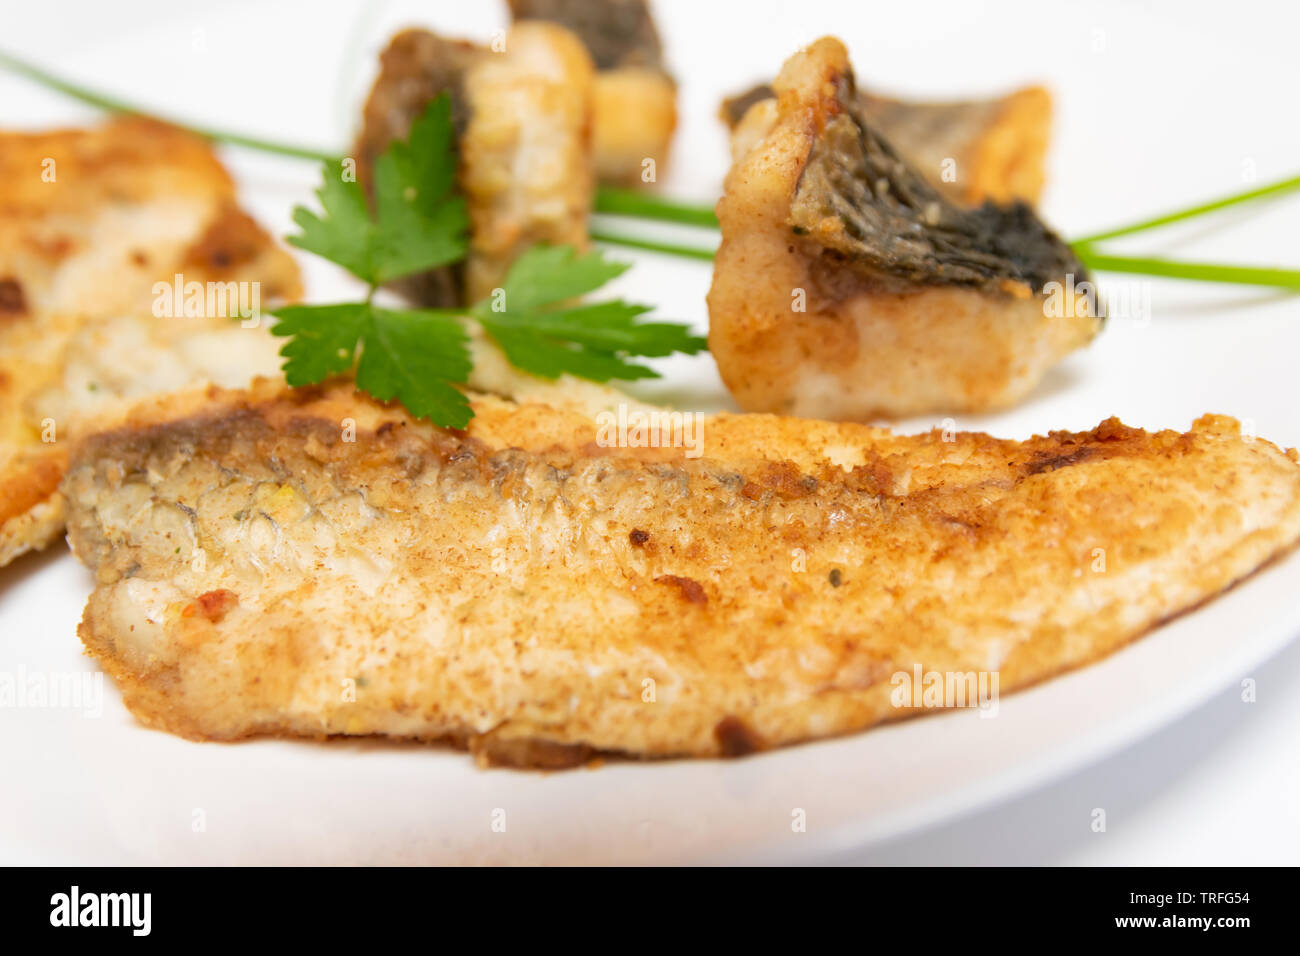 Leckeres Essen, Ernährung, Küche und kulinarische Konzept: closeup Stücke gebraten, gebacken, golden und lecker Fisch auf einem weißen Teller. Stockfoto